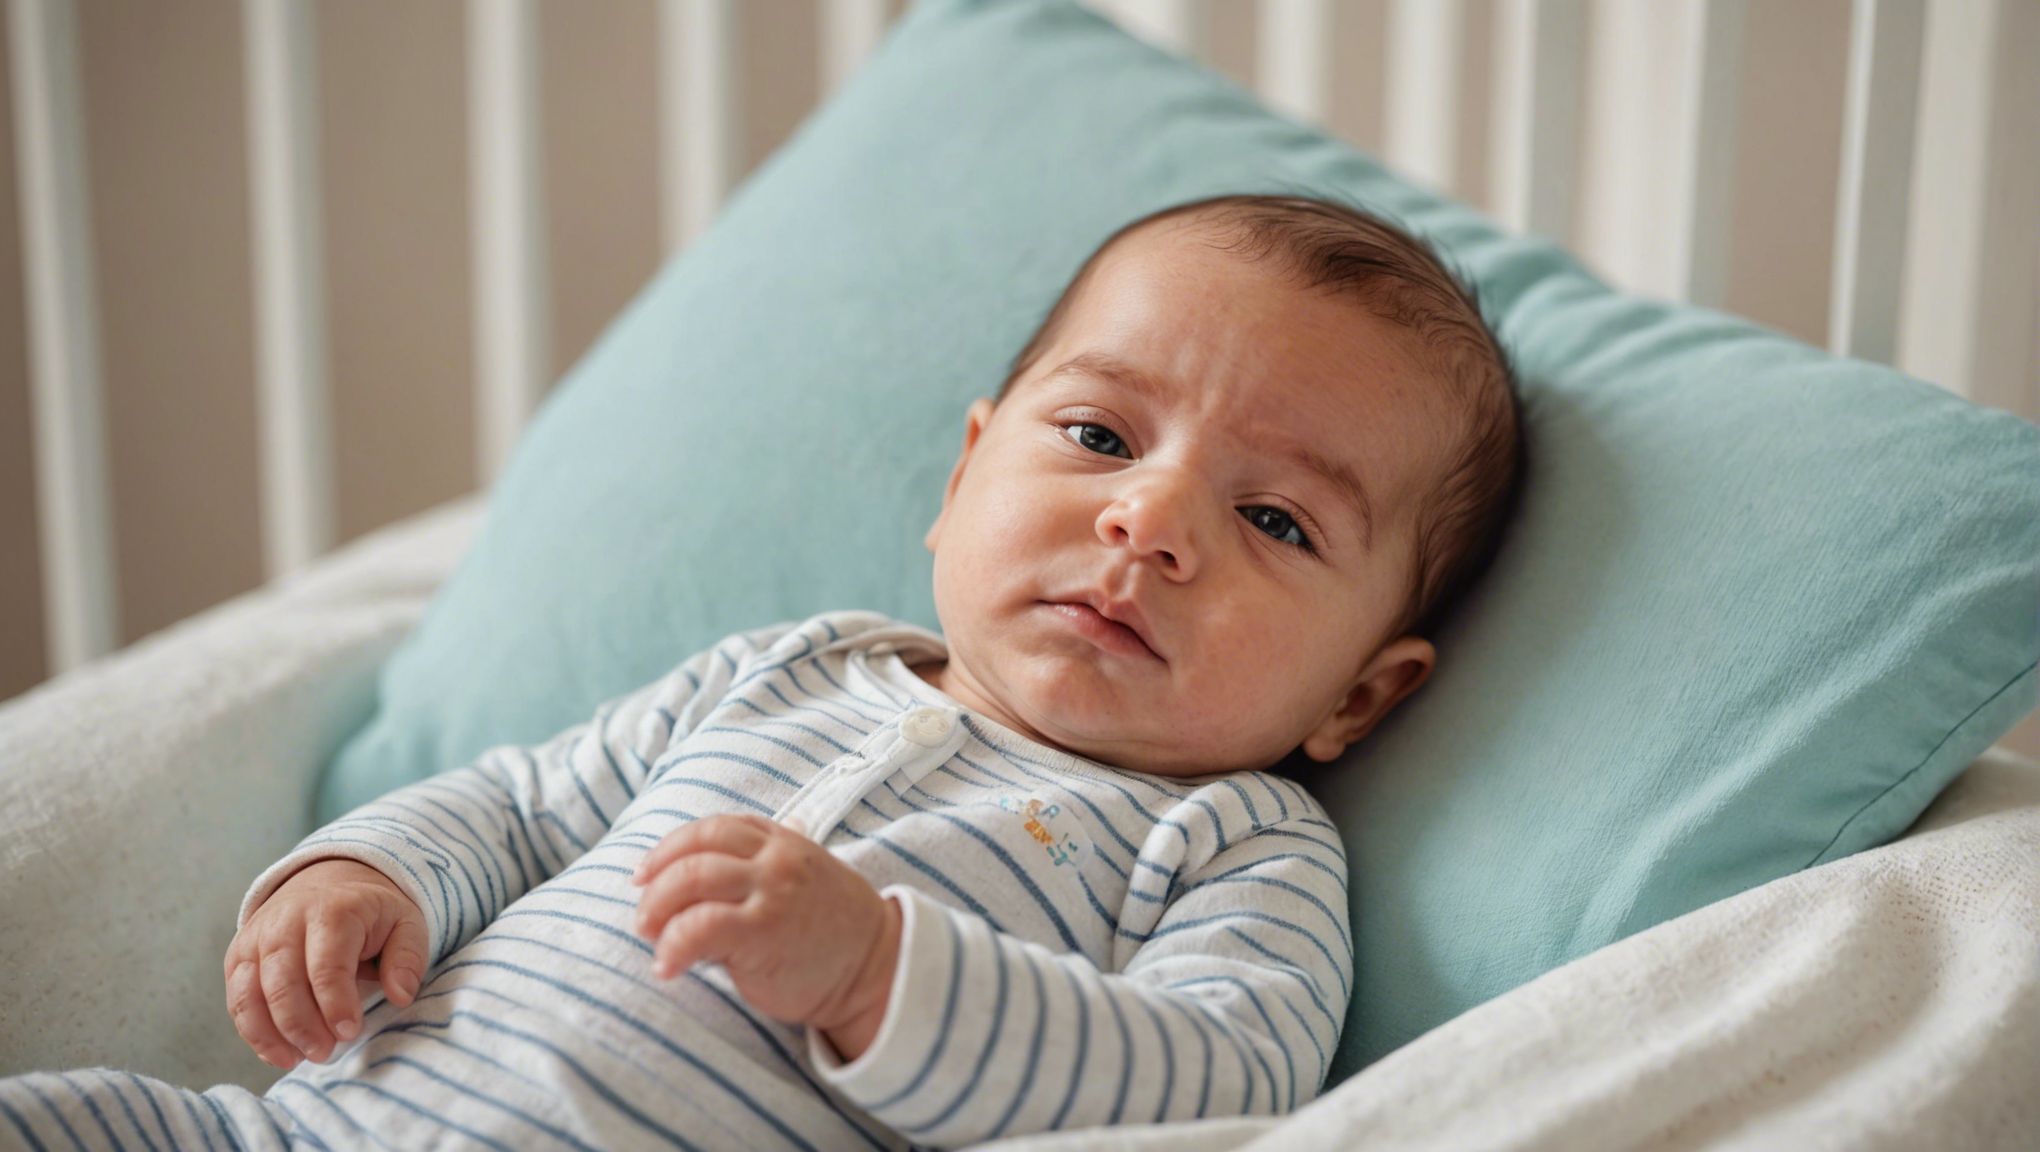 découvrez nos conseils pour aider votre bébé de 1 mois à trouver un sommeil réparateur et à bien dormir la nuit. des astuces simples pour une nuit paisible pour votre tout-petit et pour vous.